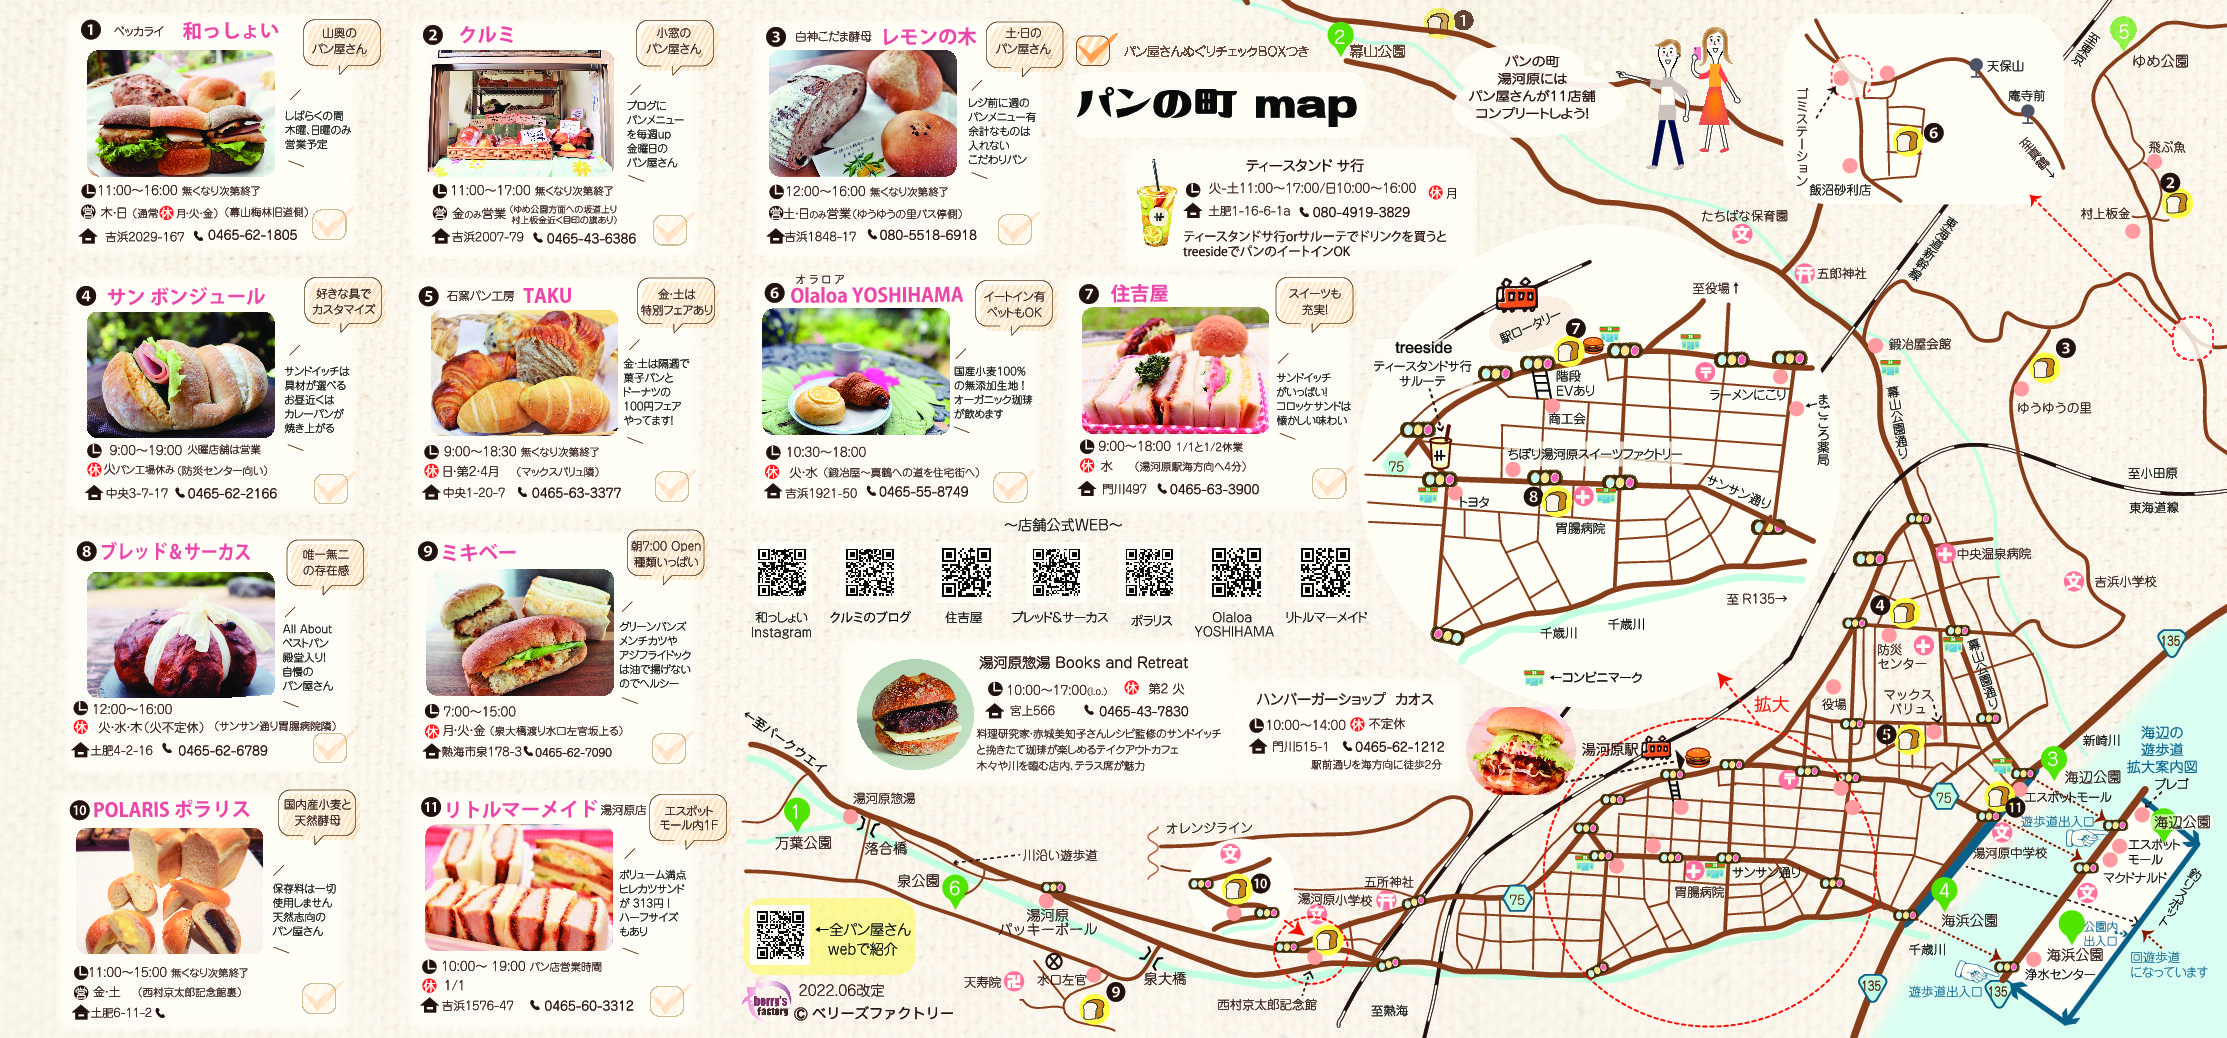 202206月改定ゆがわらパンmap_map